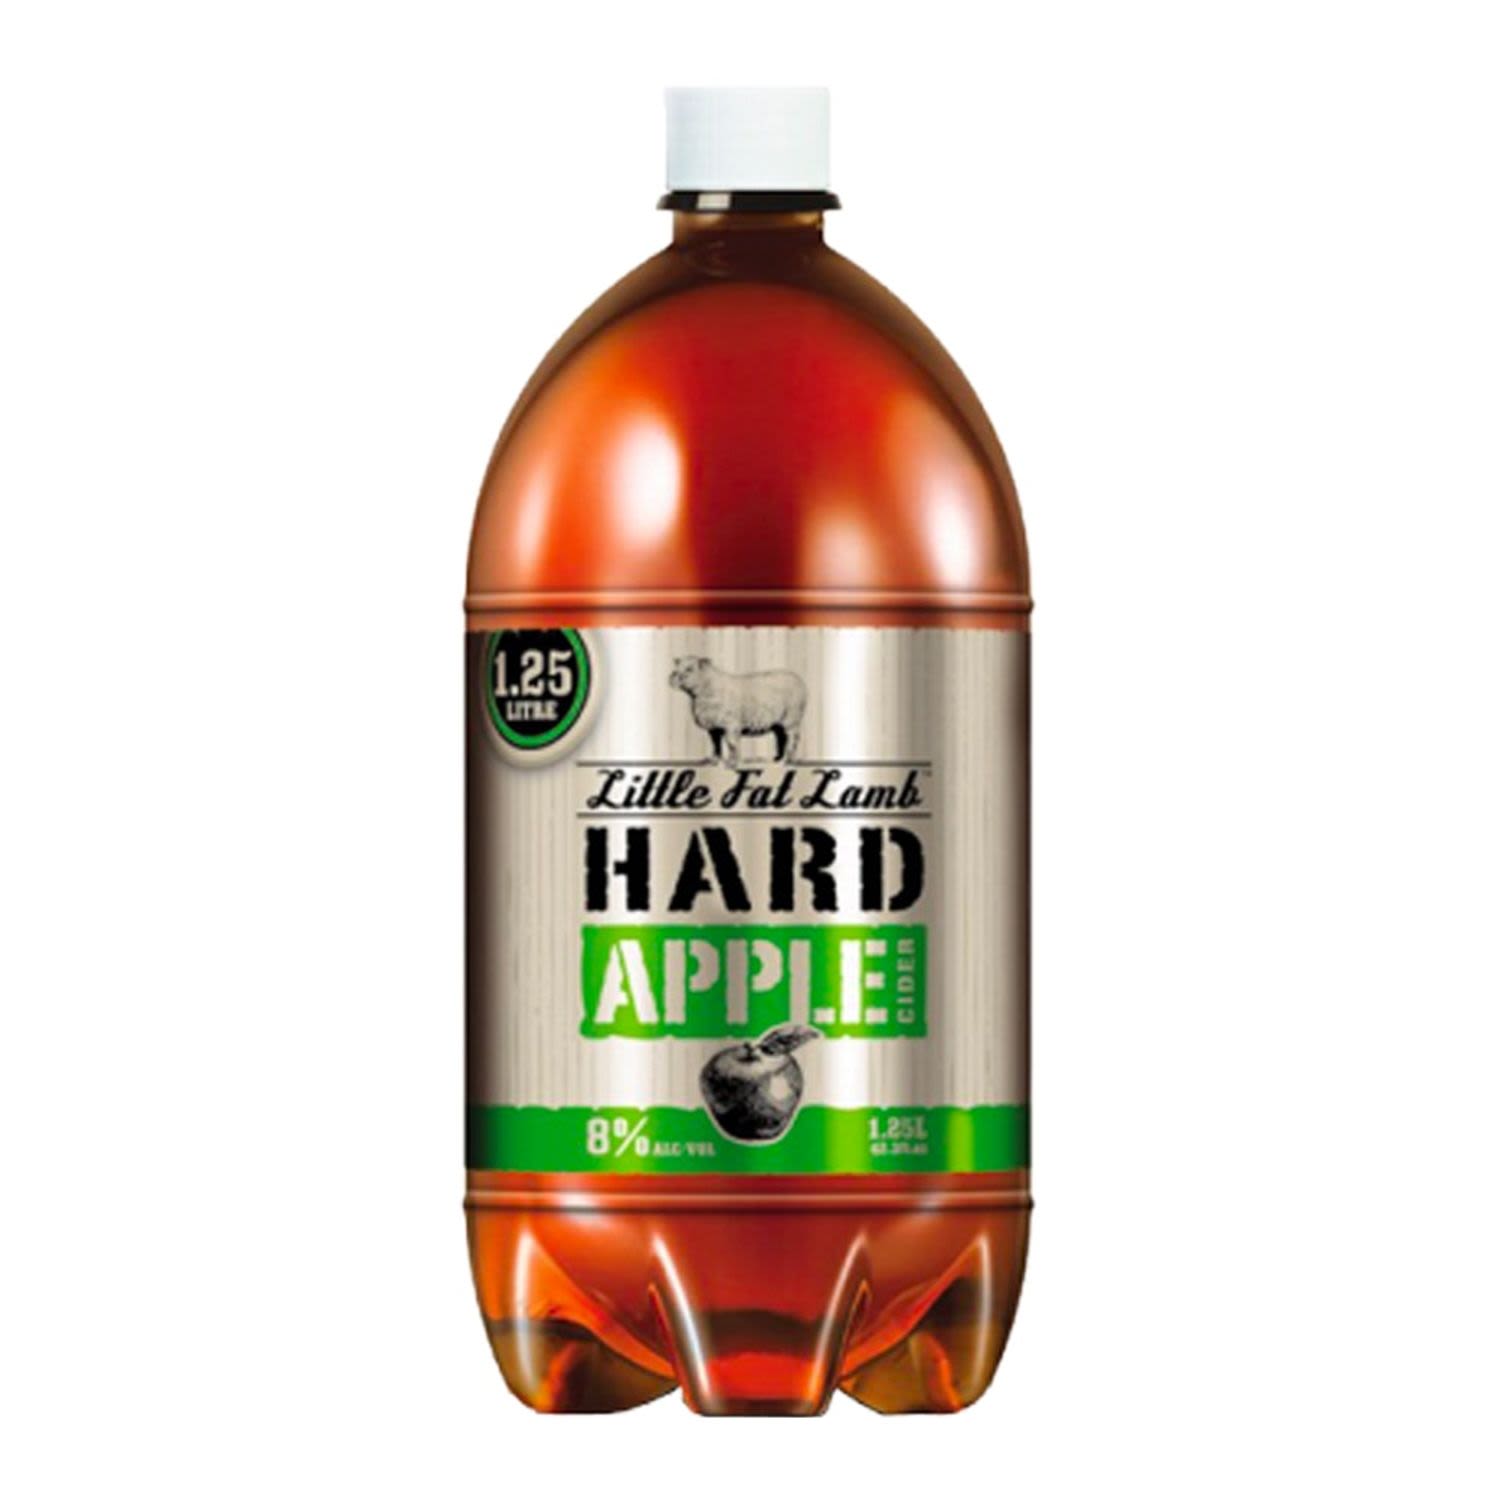 Little Fat Lamb Hard Apple Cider 1.25L<br /> <br />Alcohol Volume: 8.00%<br /><br />Pack Format: 12 Pack<br /><br />Standard Drinks: 7.9</br /><br />Pack Type: Bottle<br /><br />Country of Origin: Australia<br />